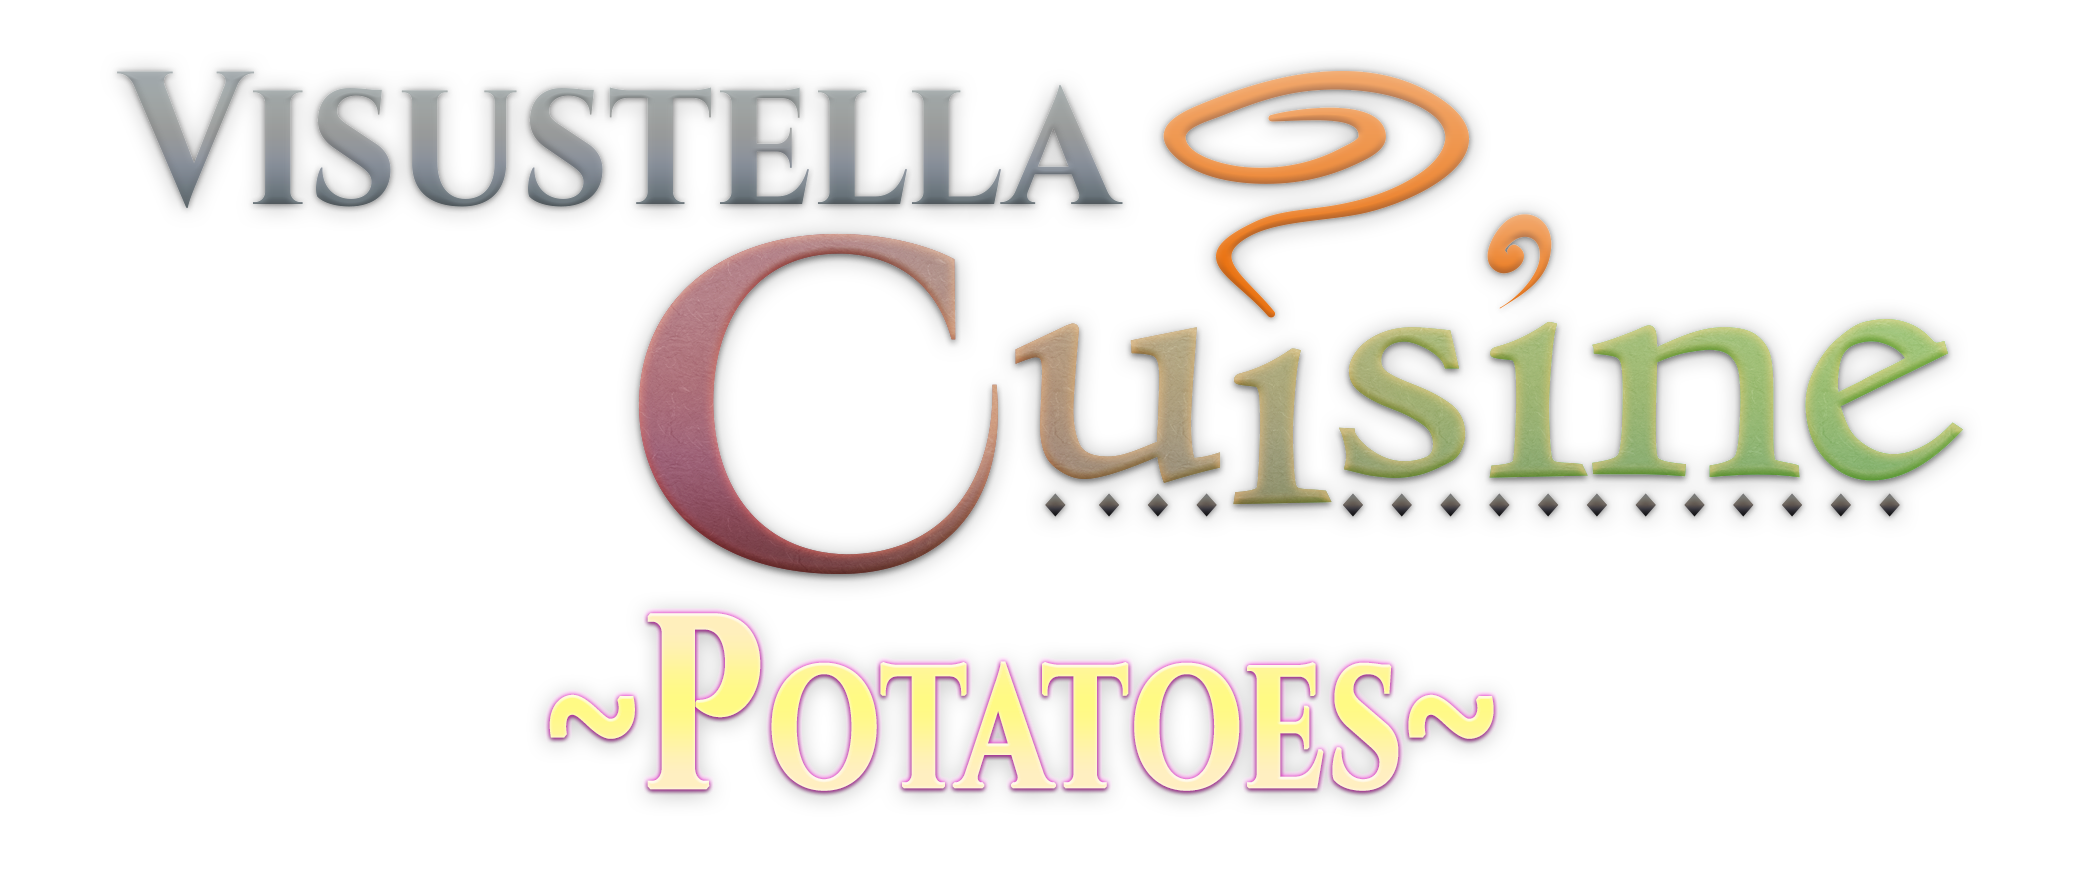 VisuStella Cuisine: Potatoes